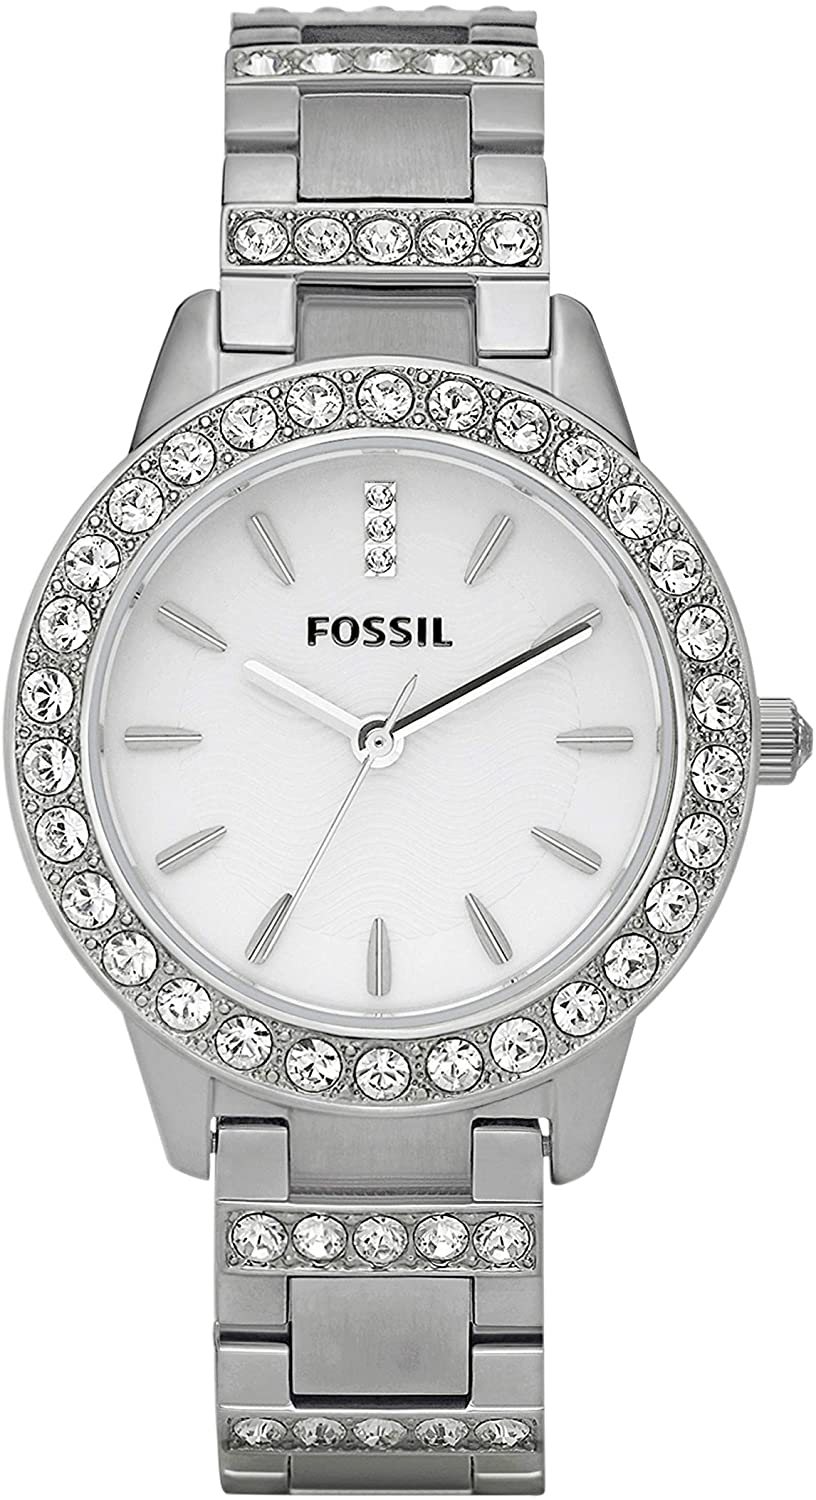 Fossil Women's Jesse Stainless Steel Watch